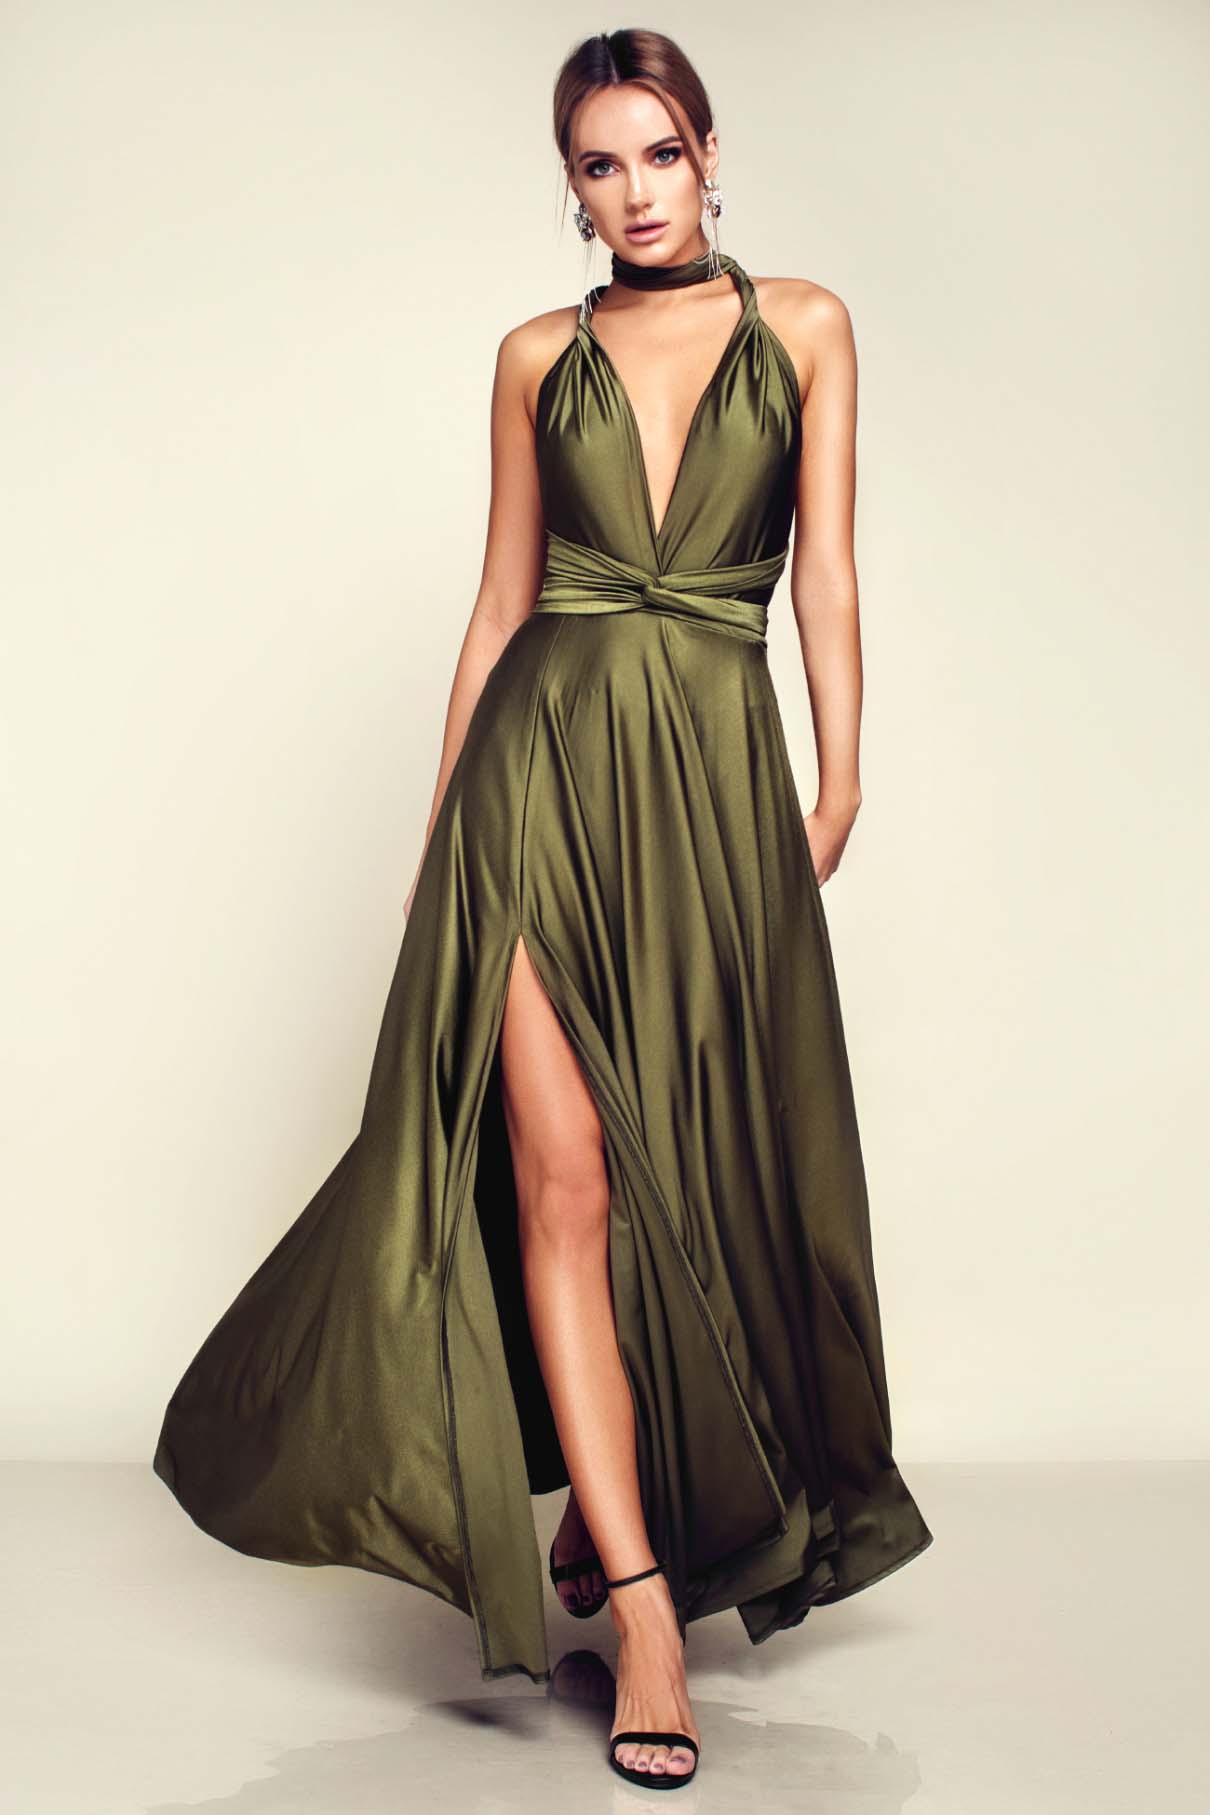 Khaki Evening Dress Online Hotsell, UP ...